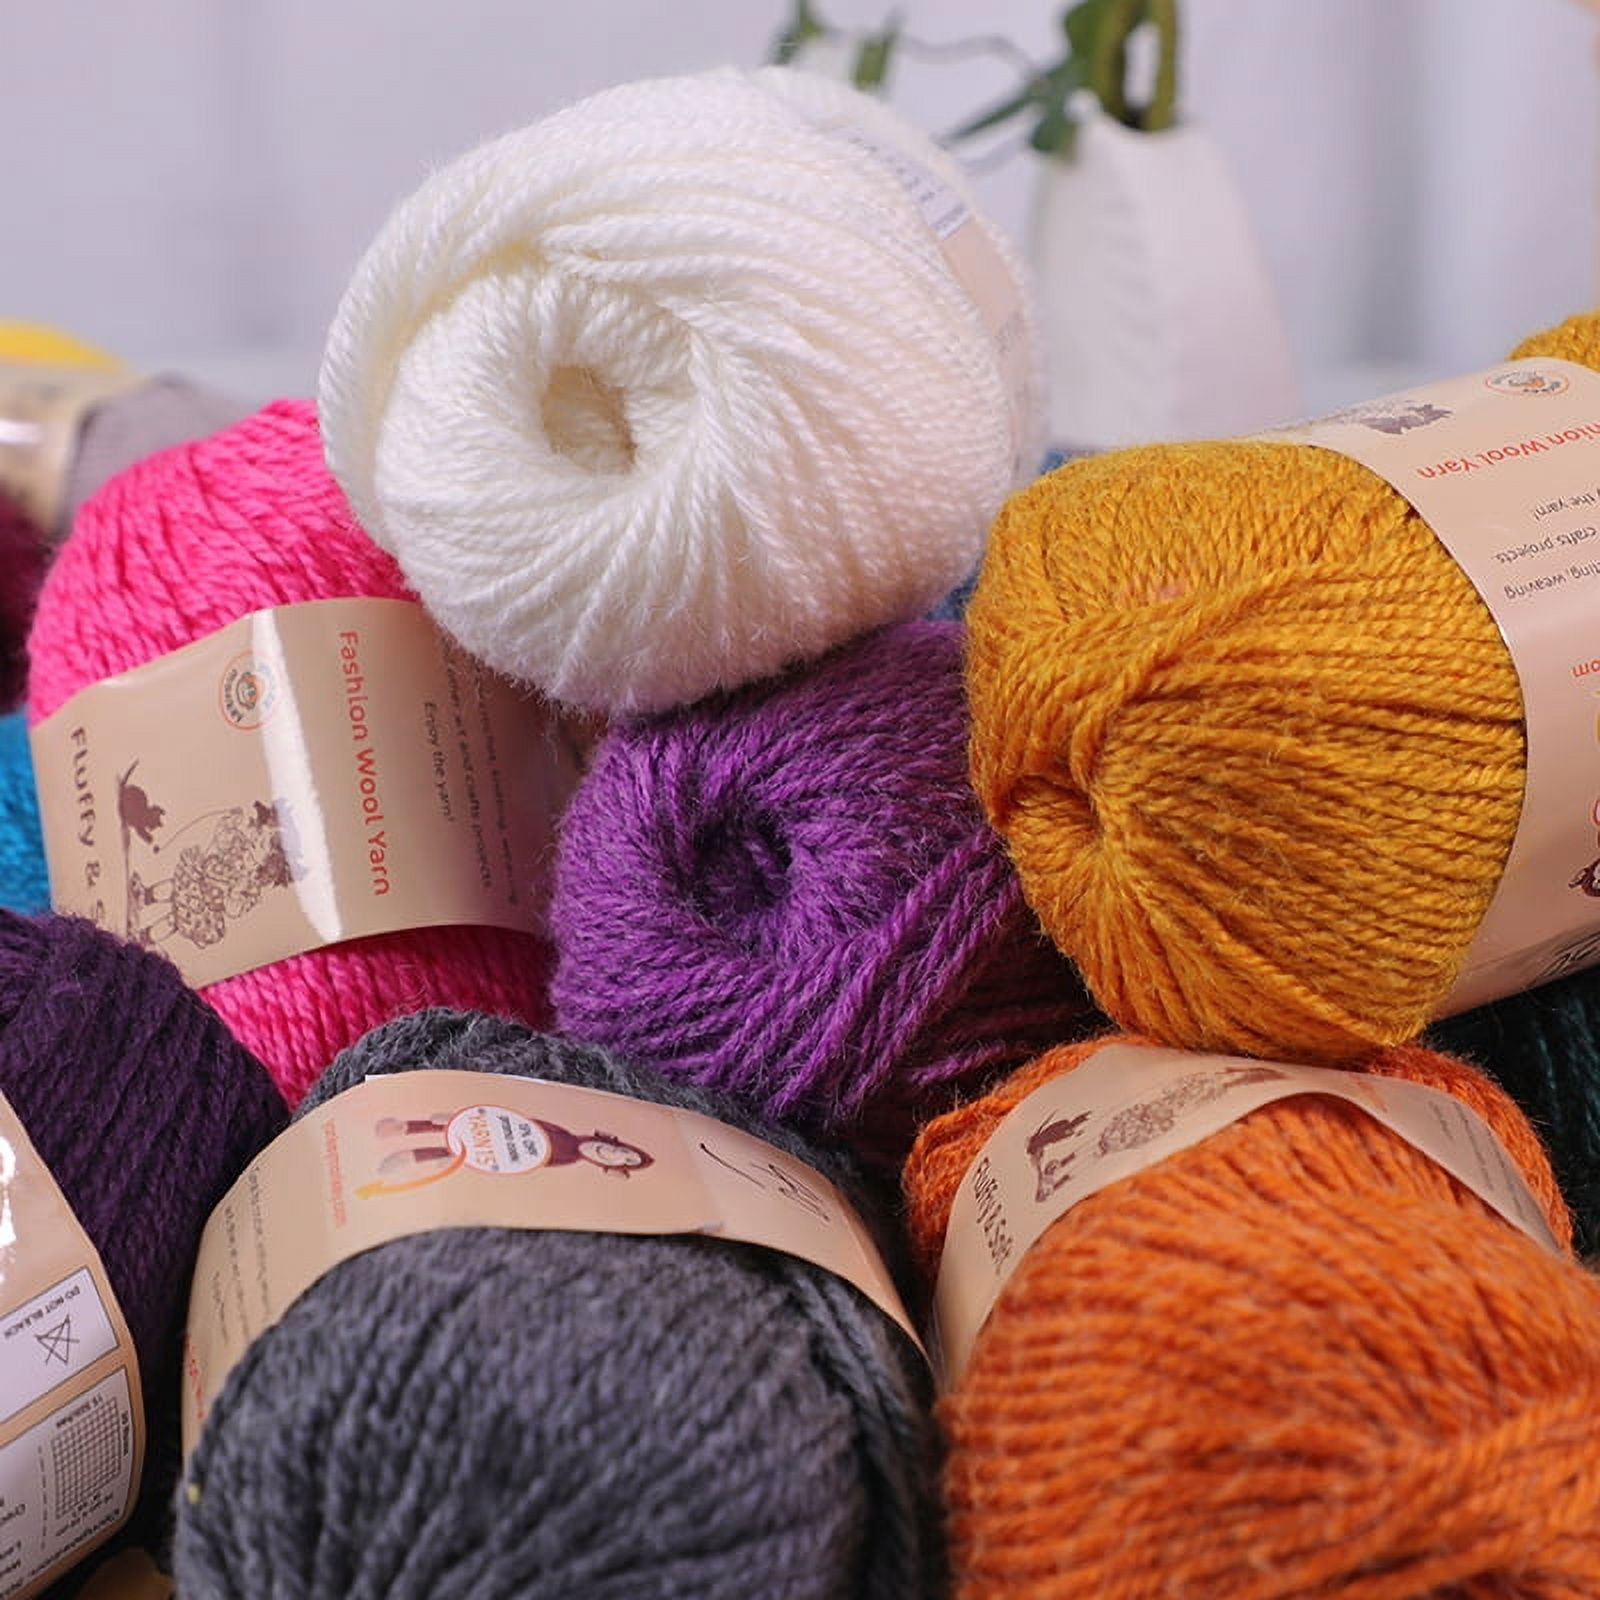  2 Pcs Crochet Yarn, Soft and Fluffy Yarn for Crocheting and  Knitting, 4ply Acrylic Yarn, 3 DK (Light), 262yd(150g) - Orange